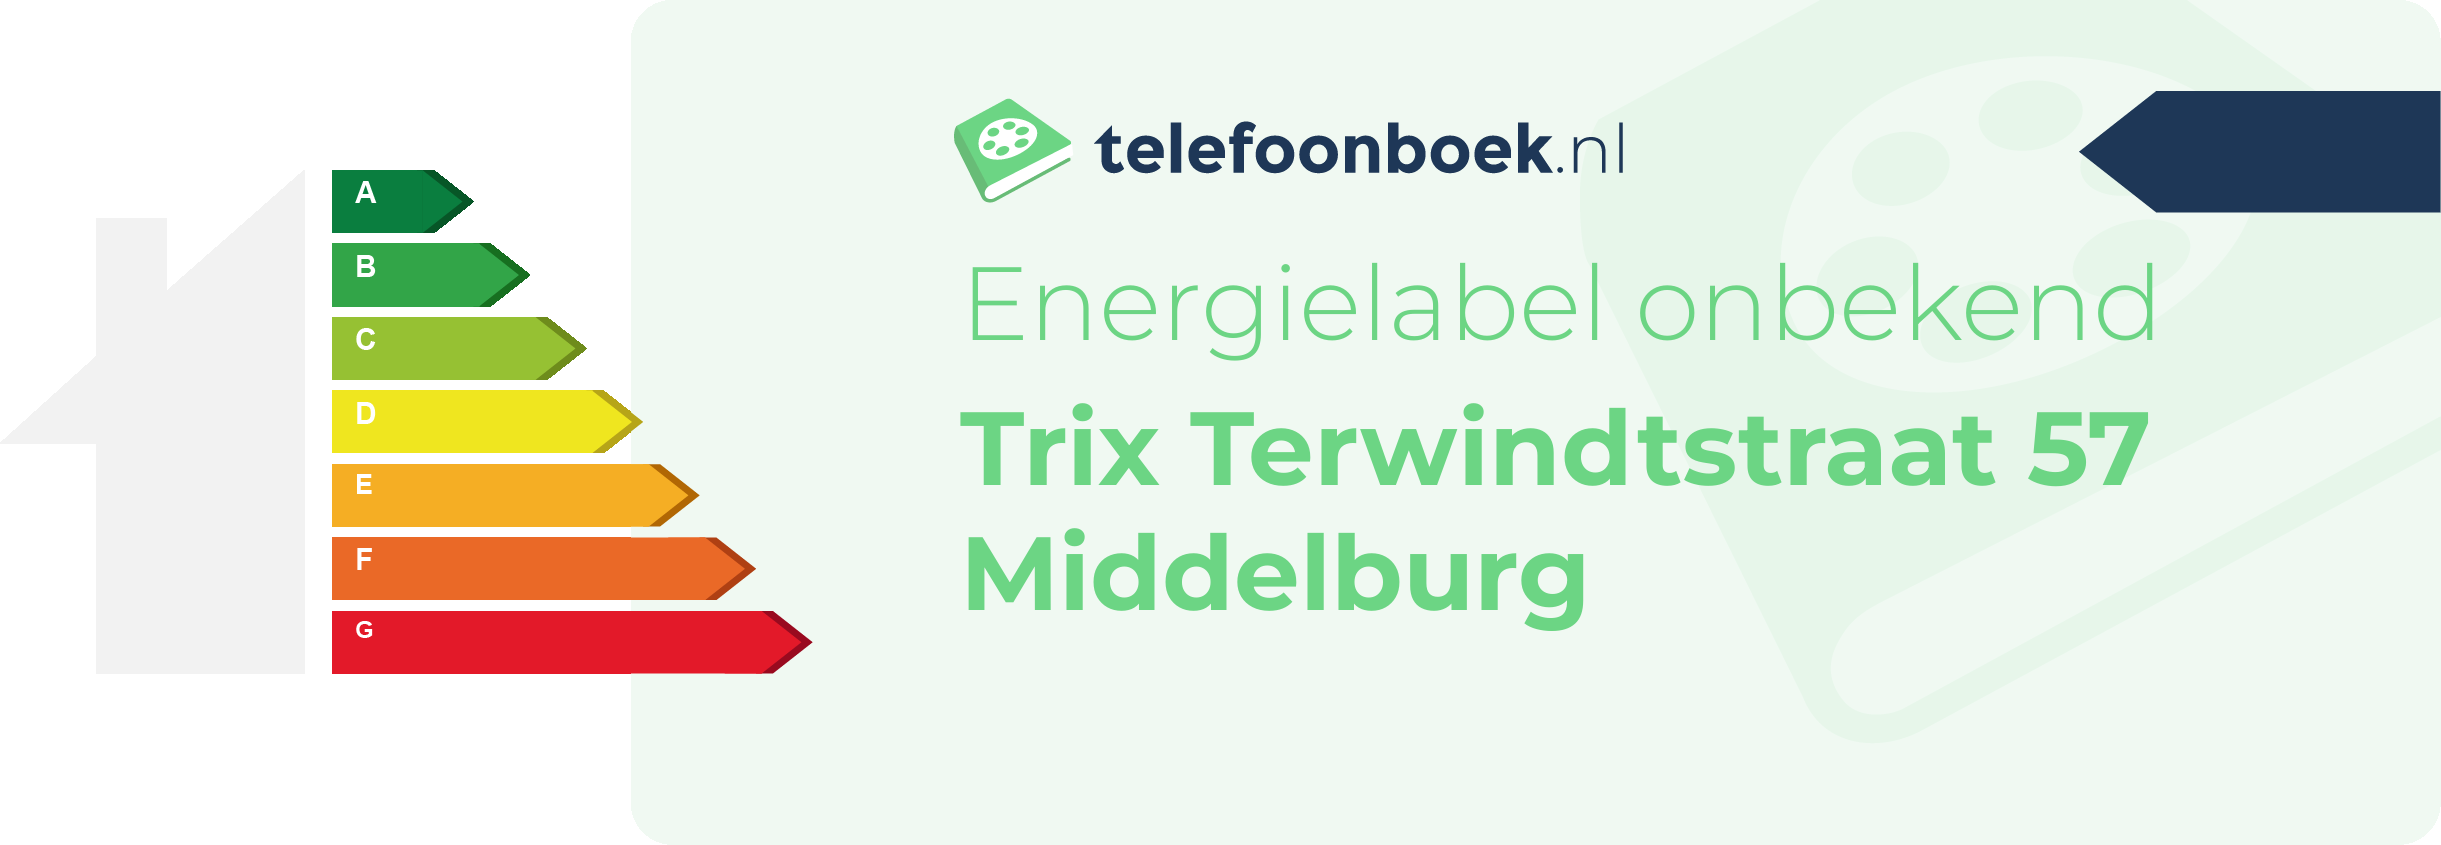 Energielabel Trix Terwindtstraat 57 Middelburg